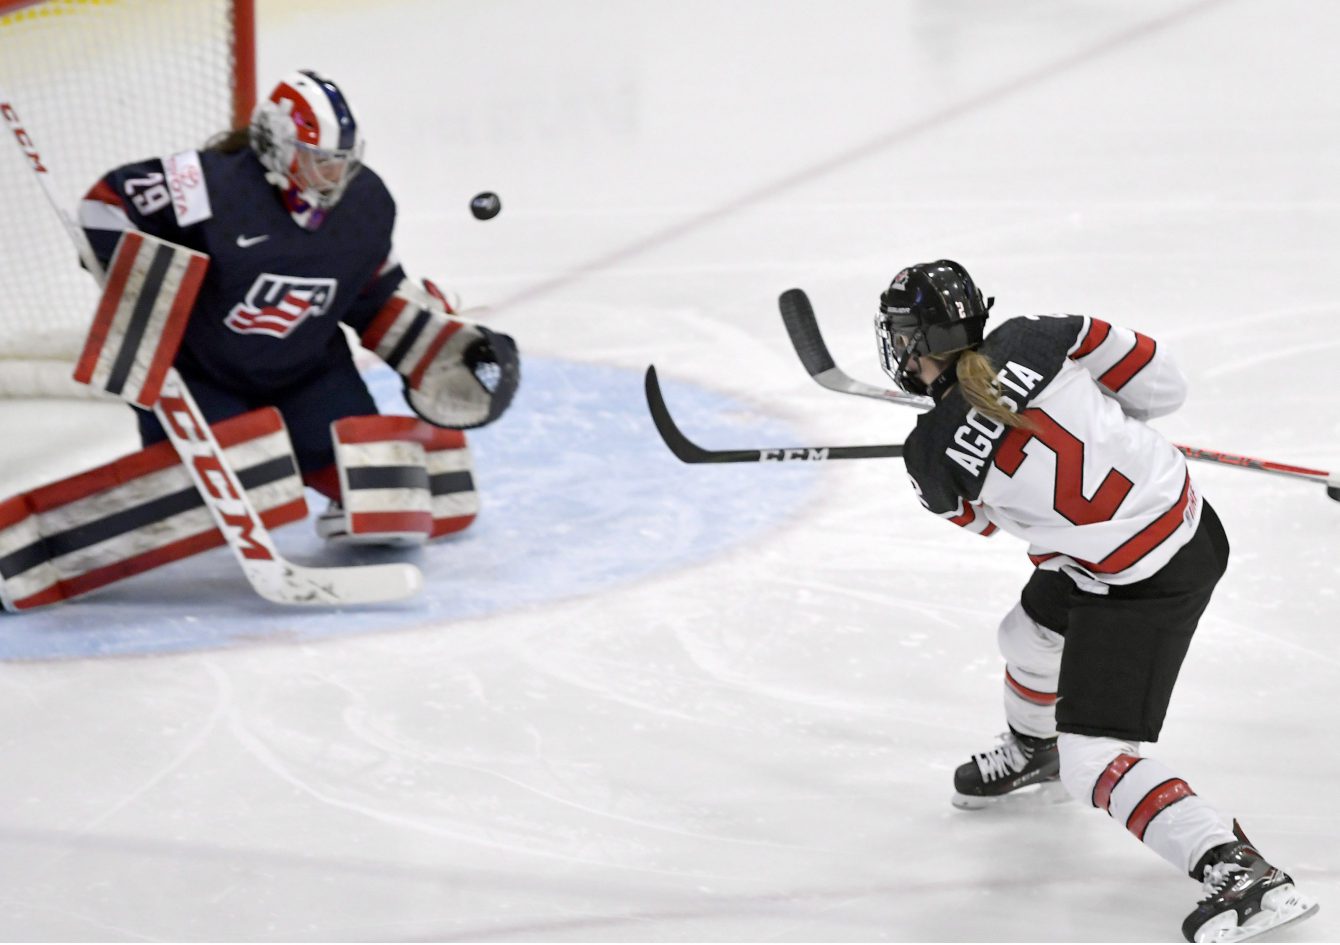 Meghan Agosta donne les devants 1-0 au Canada tôt en première période de la finale des Championnats du monde de hockey féminin à Plymouth, au Michigan, le 7 avril 2017. THE CANADIAN PRESS/Jason Kryk